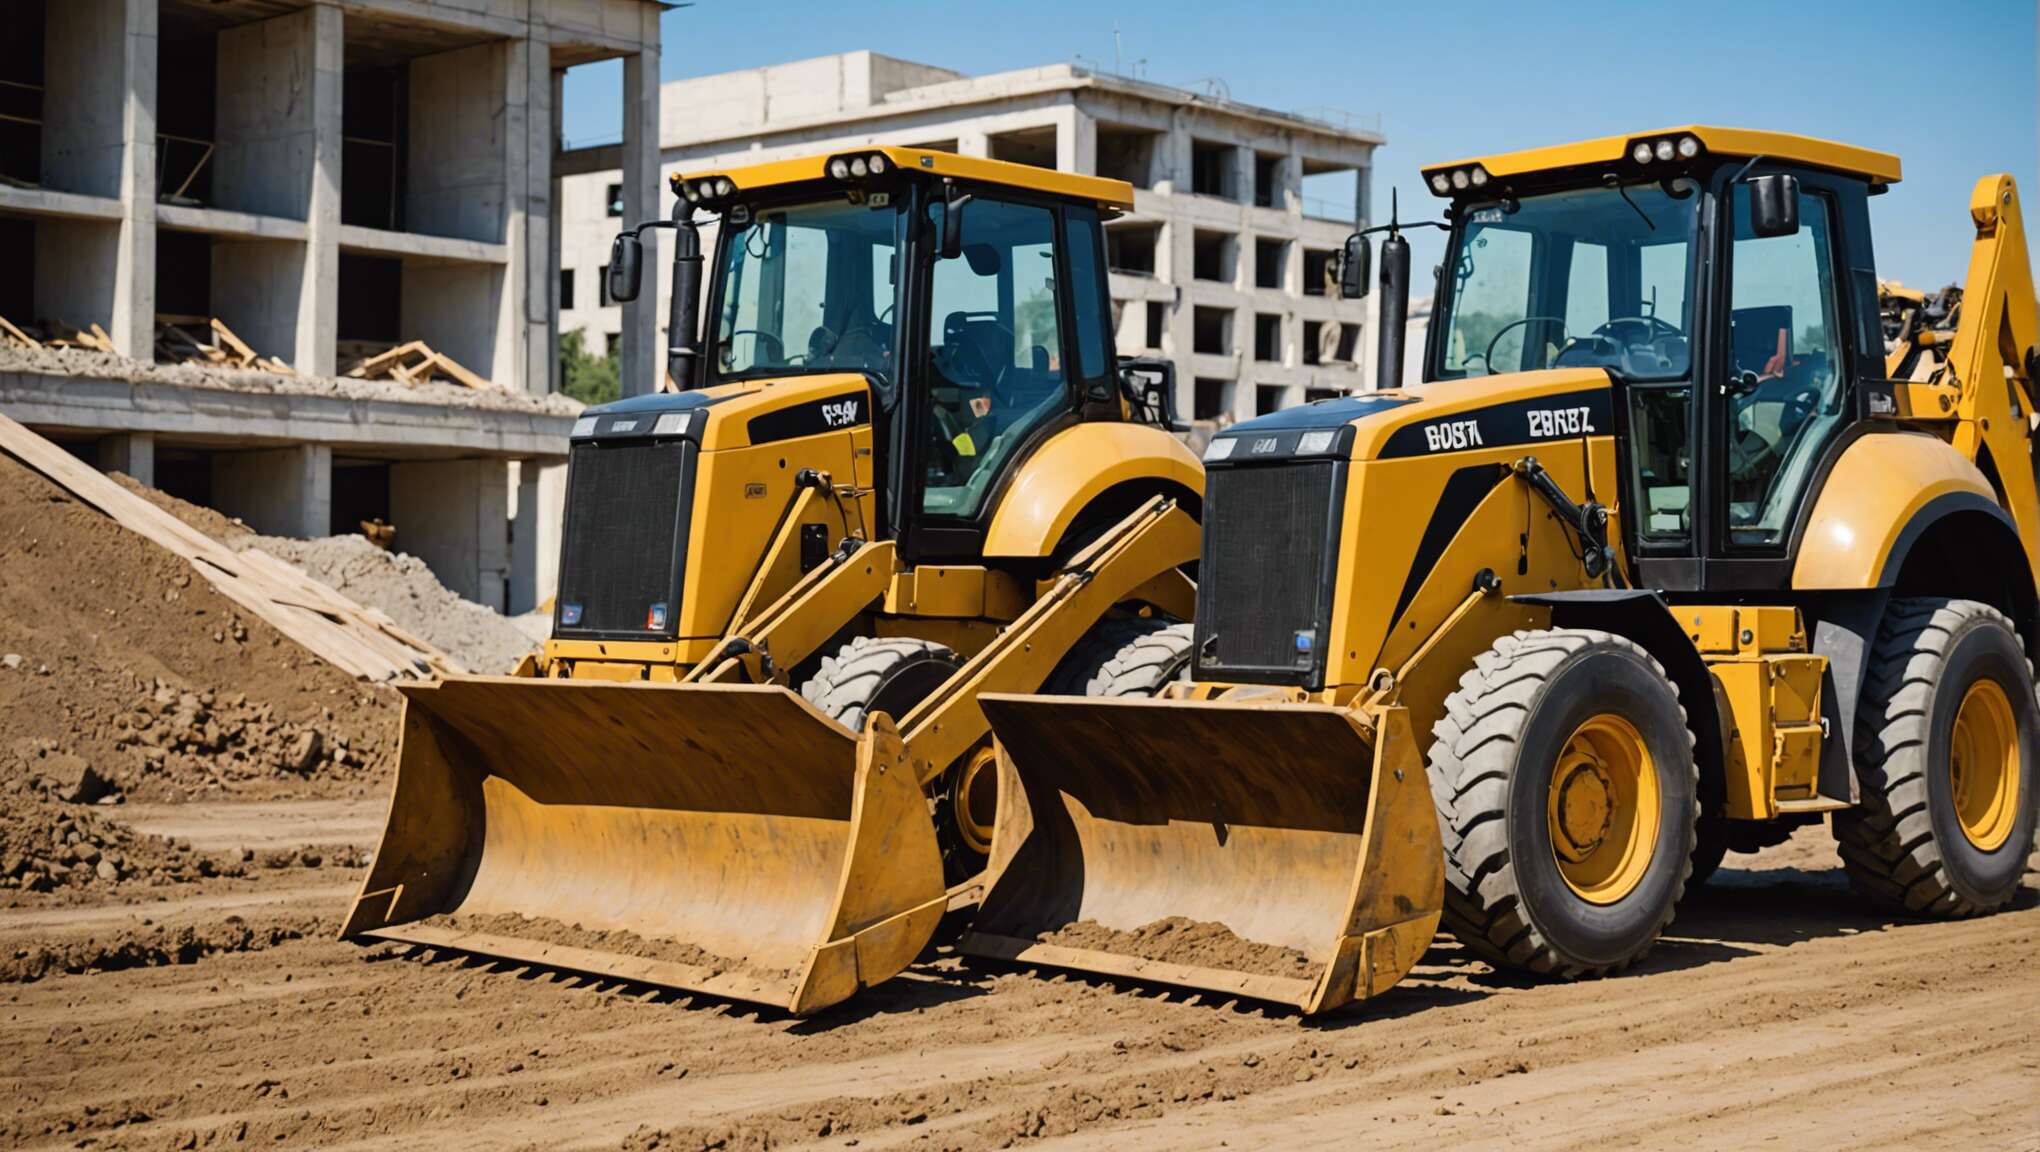 Bulldozers hybrides vs traditionnels : quel choix pour votre terrassement ?